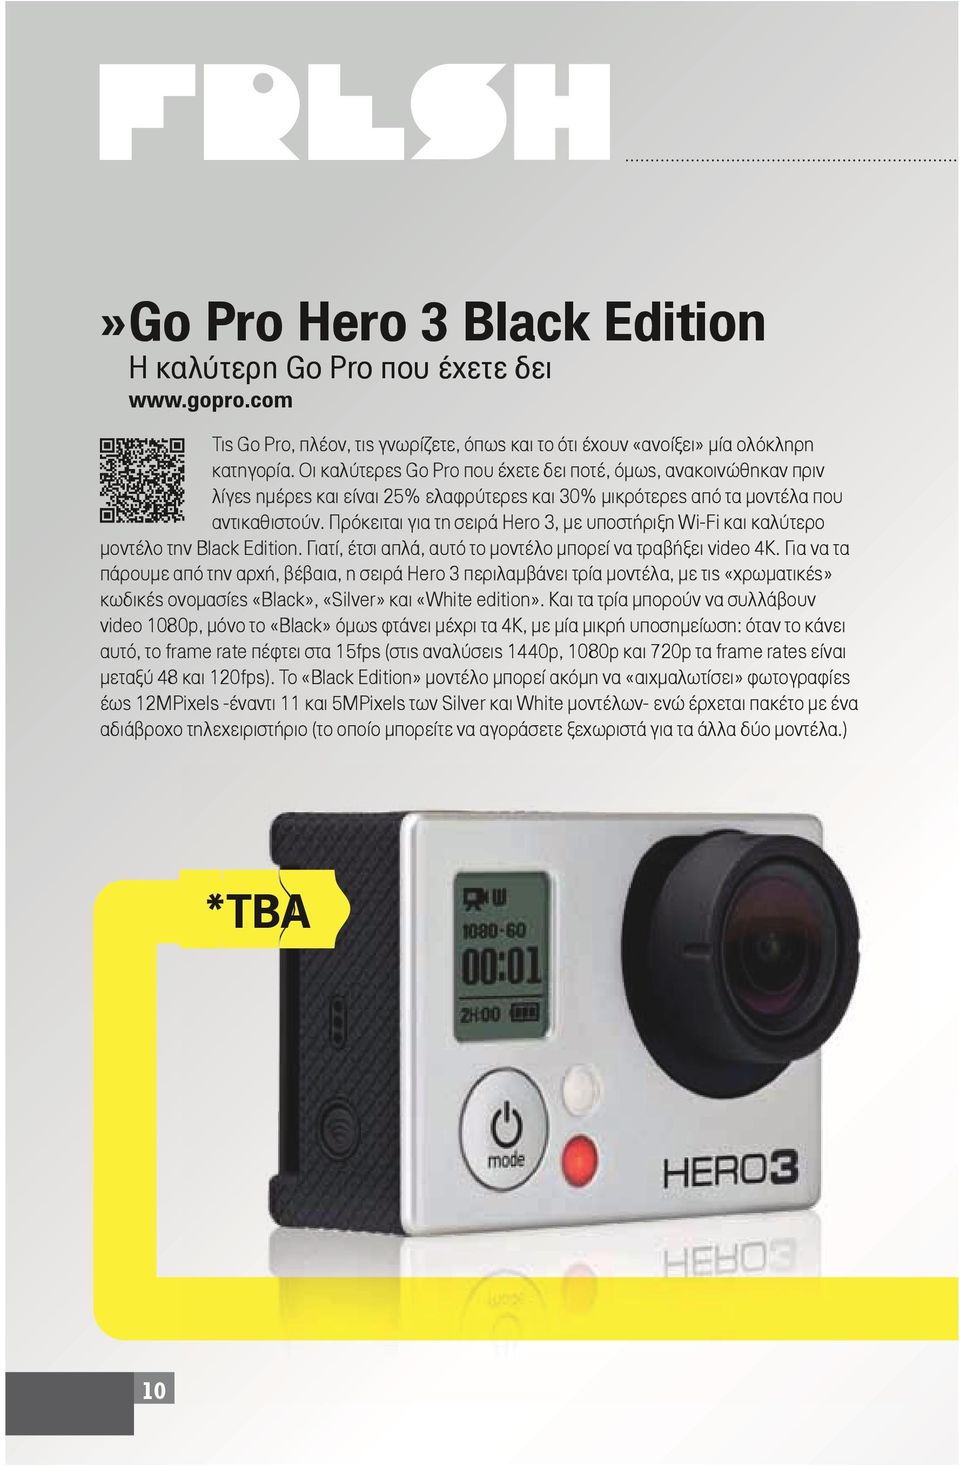 Πρόκειται για τη σειρά Hero 3, με υποστήριξη Wi-Fi και καλύτερο μοντέλο την Black Edition. Γιατί, έτσι απλά, αυτό το μοντέλο μπορεί να τραβήξει video 4K.